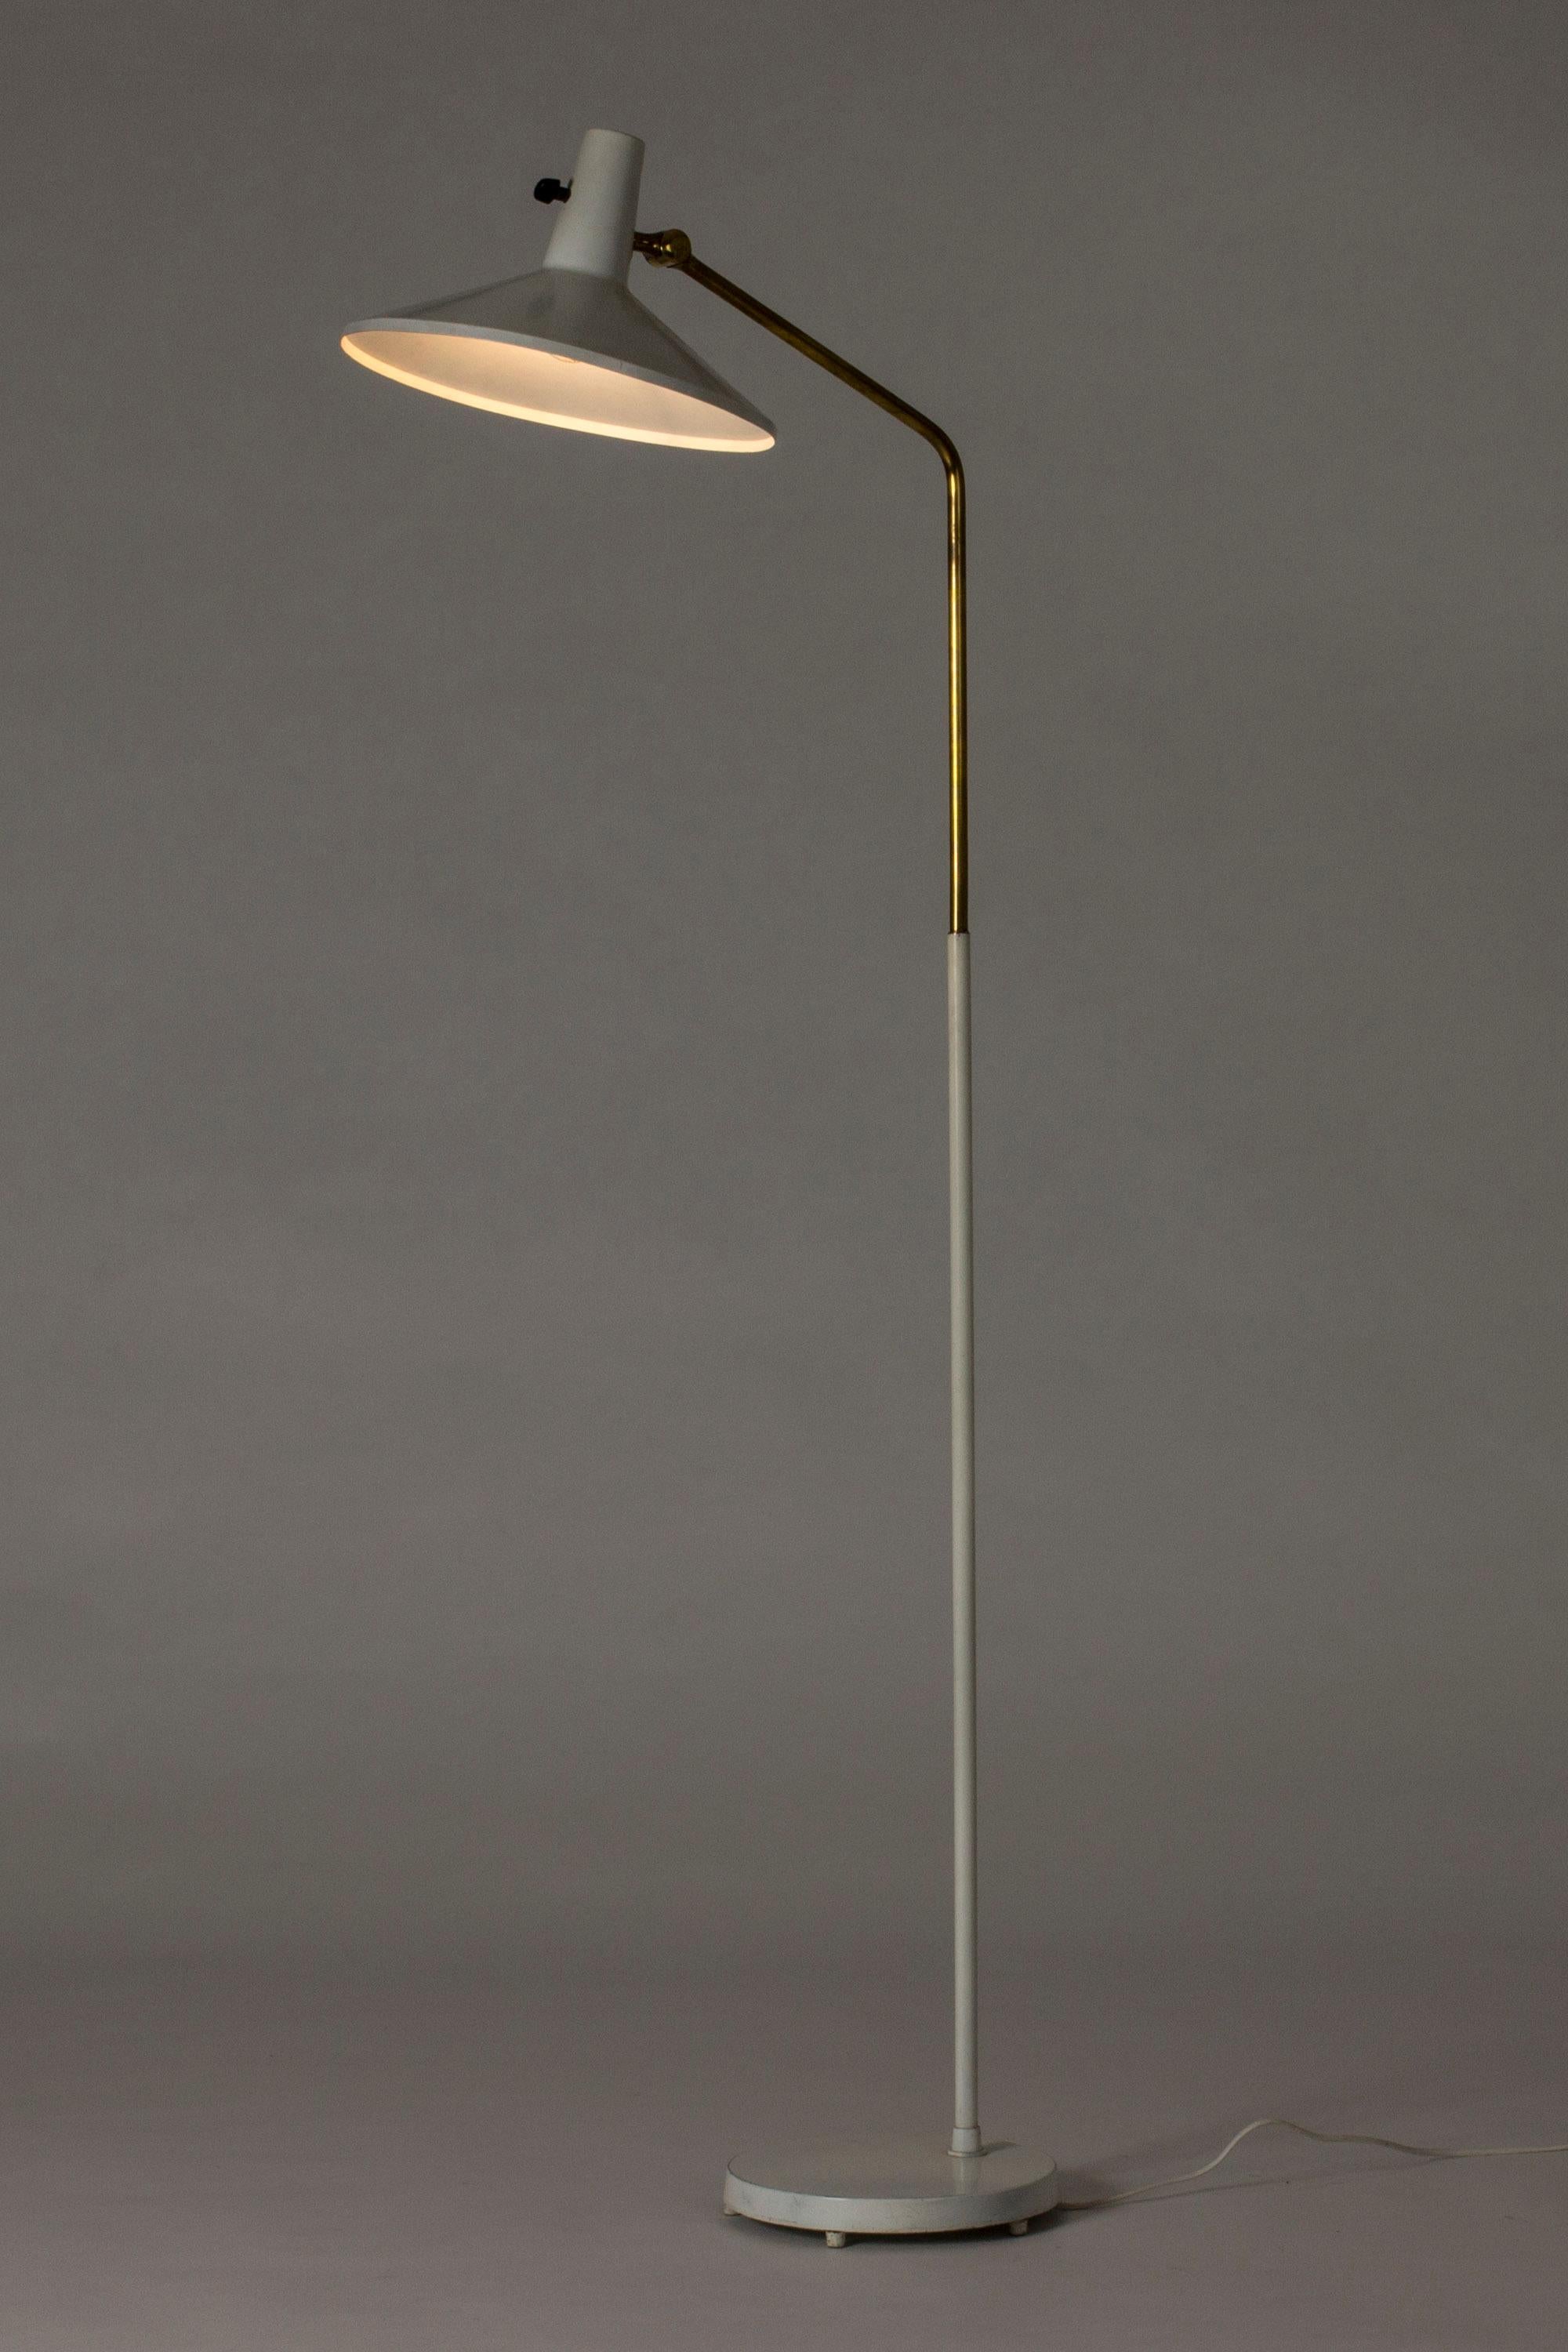 Lampadaire en métal laqué blanc et laiton à la silhouette audacieuse de Bertil Brisborg, conçu pour le service d'éclairage du grand magasin NK.